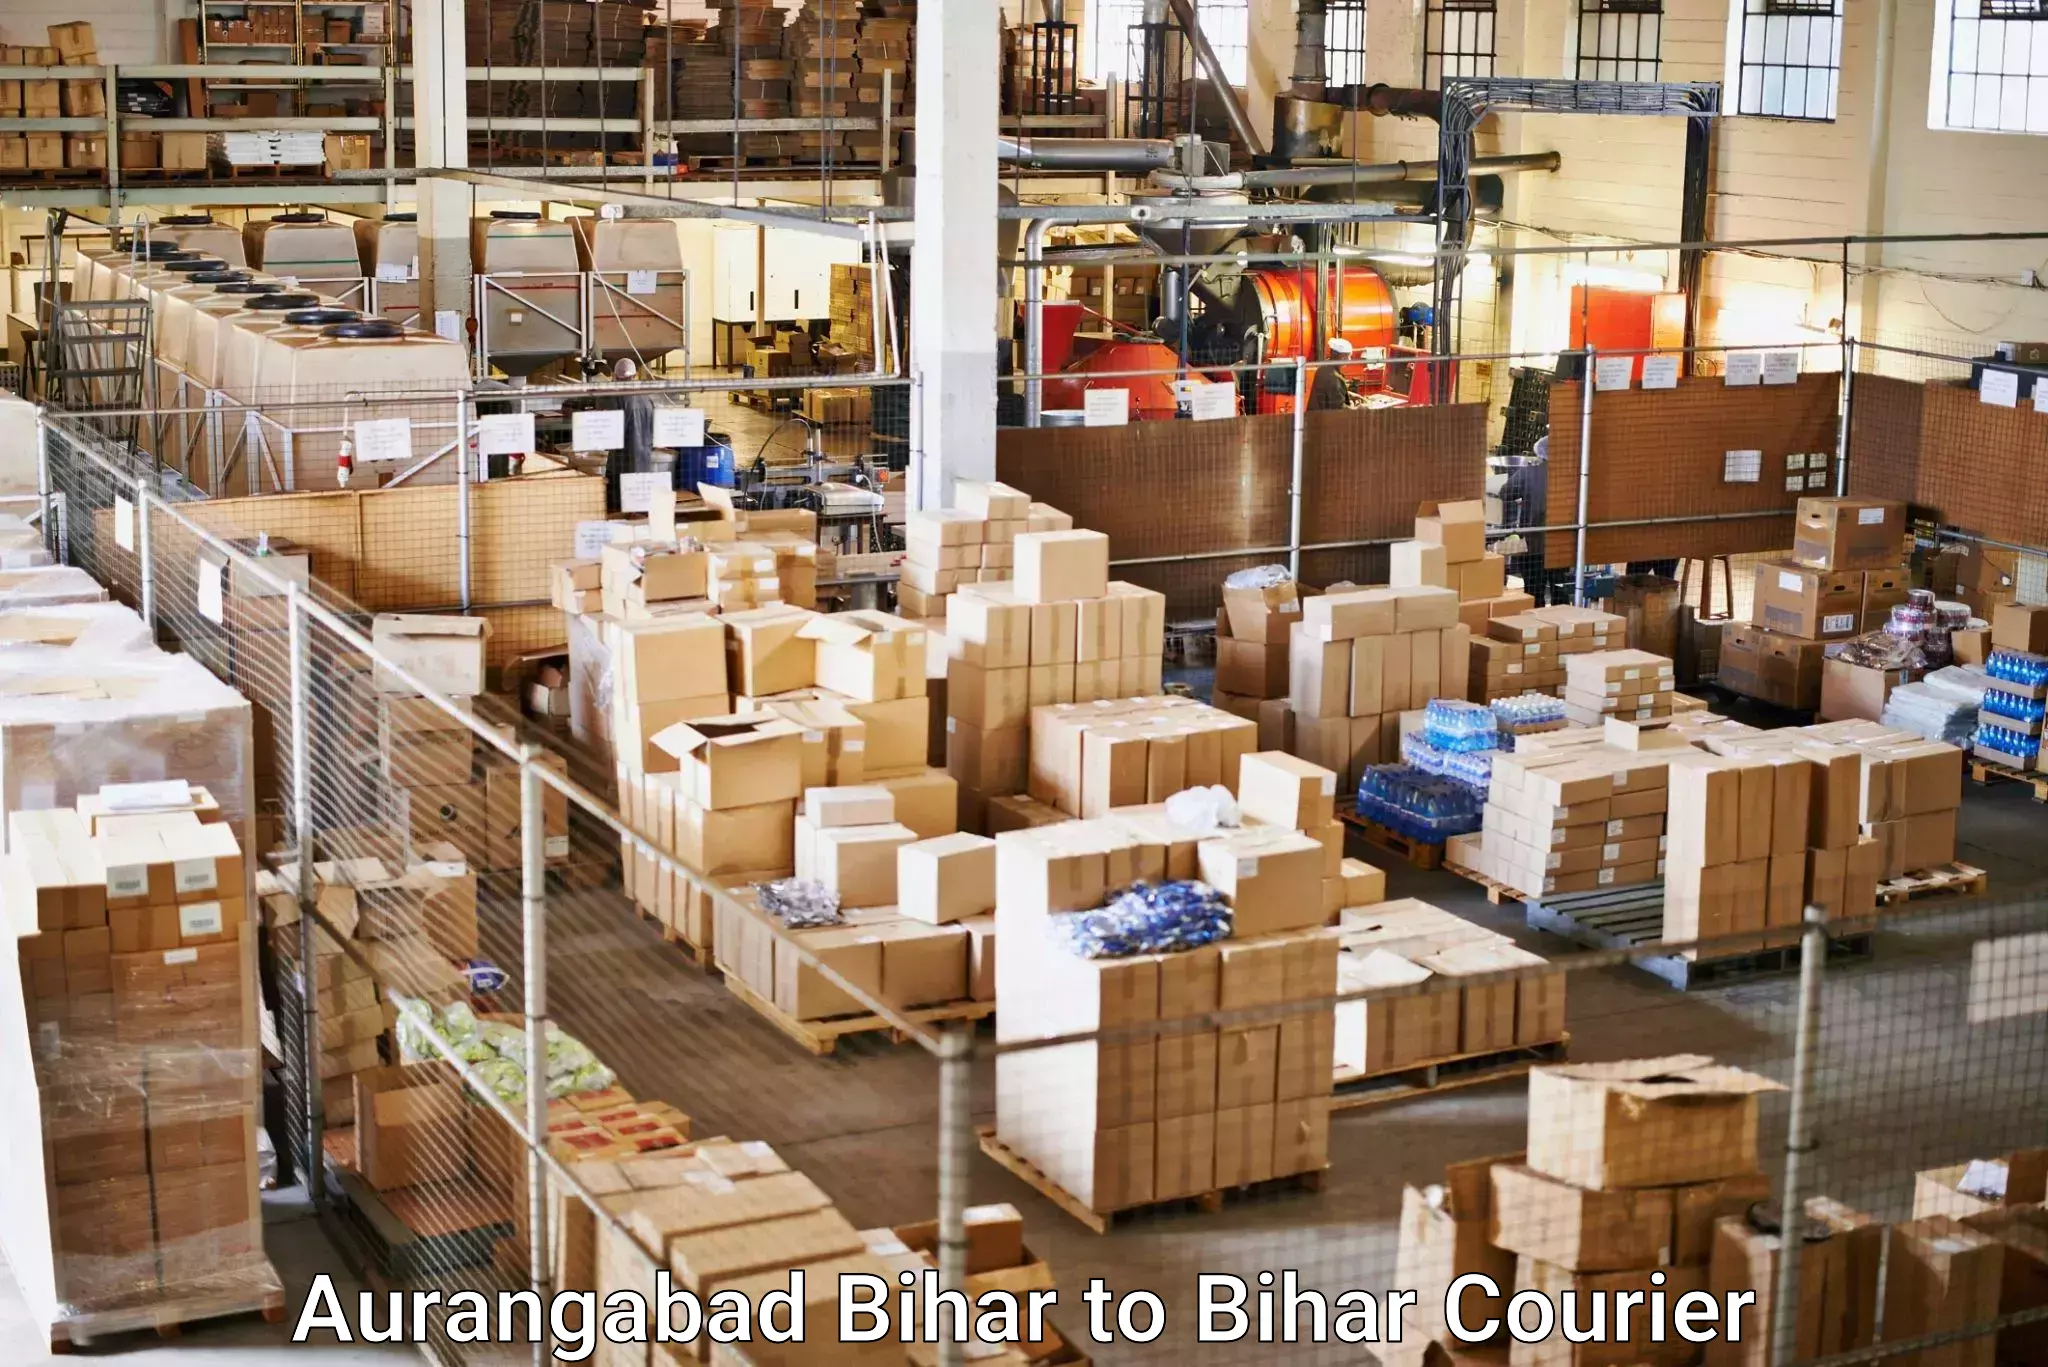 Flexible delivery schedules Aurangabad Bihar to Buxar